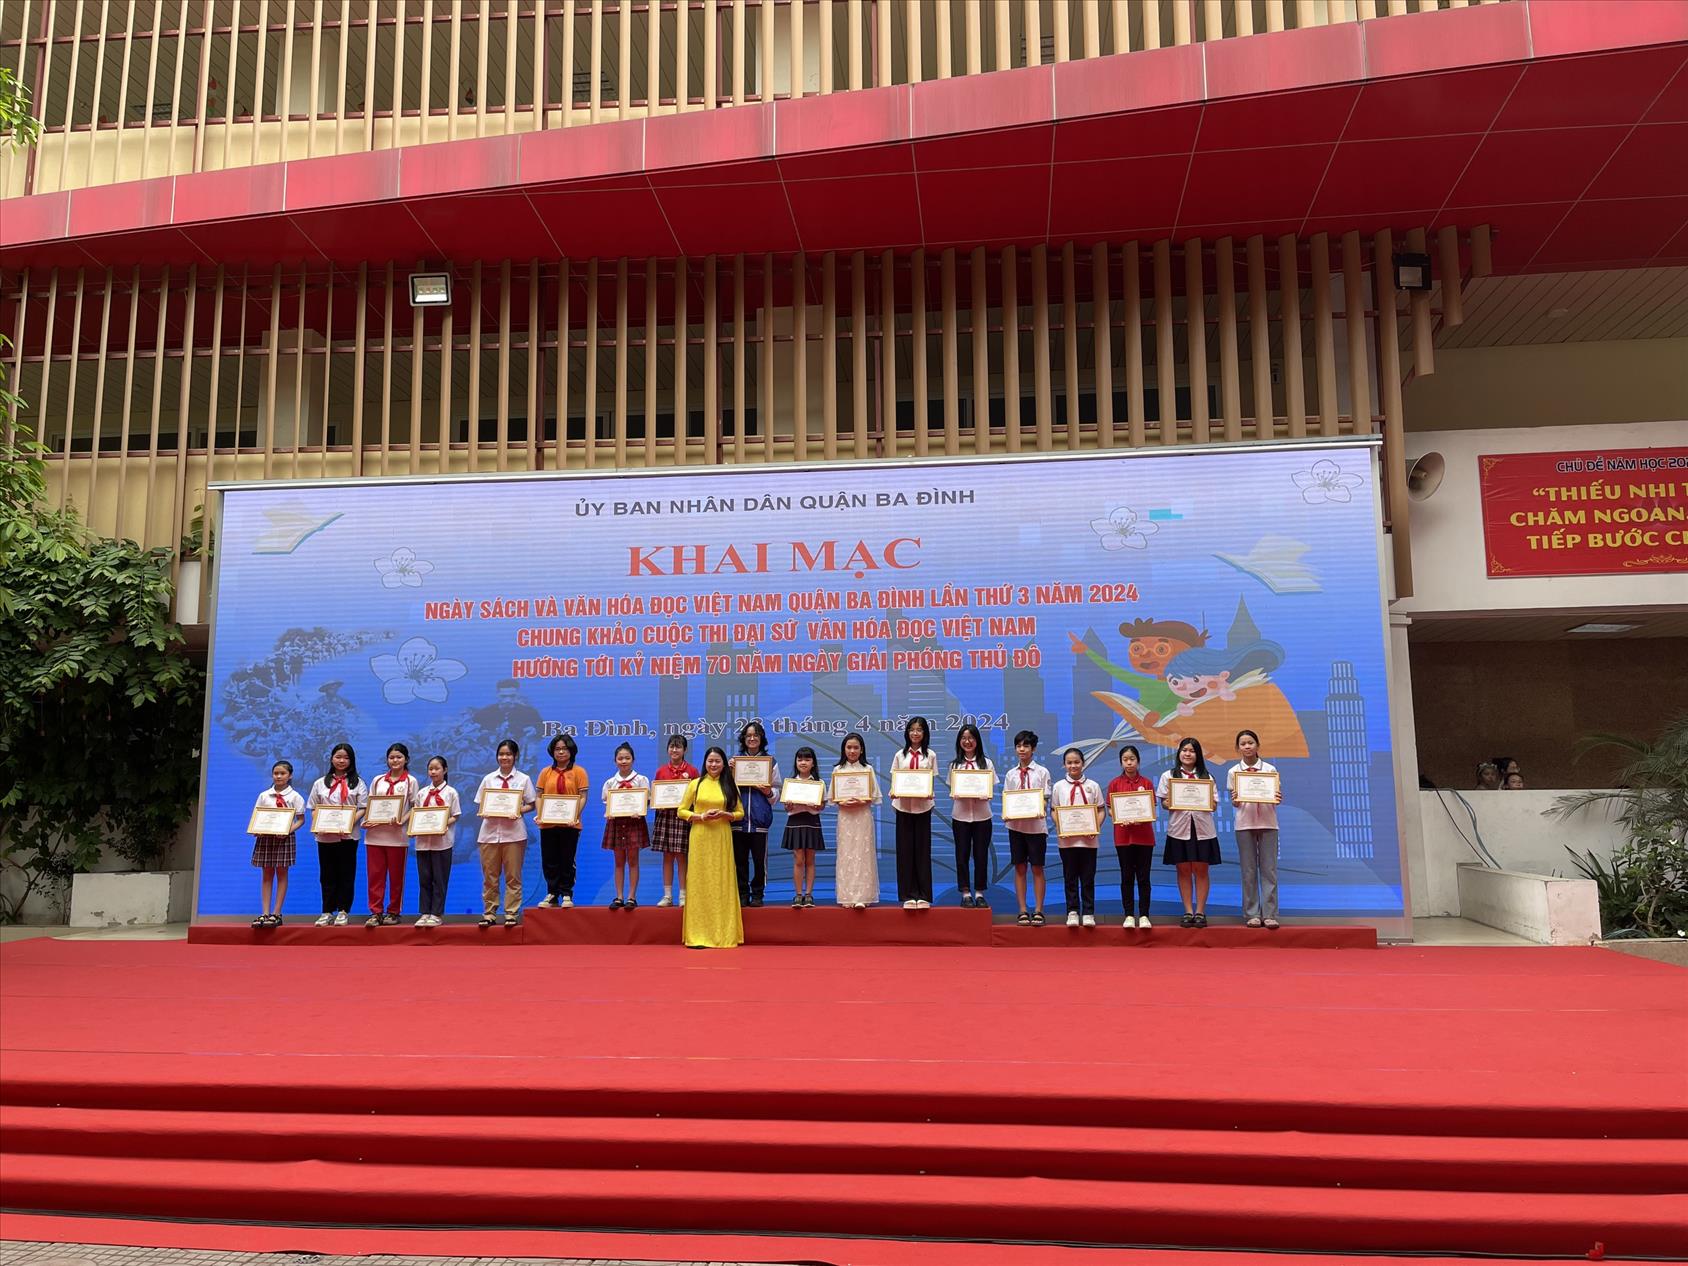 Trường Tiểu học Hoàng Diệu vinh dự có 2 học sinh đạt giải Nhì, 2 học sinh đạt giải Ba, 1 học sinh đạt giải Khuyến khích được khen thưởng trong Ngày hội Sách và Văn hóa đọc Việt Nam lần thứ III Quận Ba Đình năm 2024